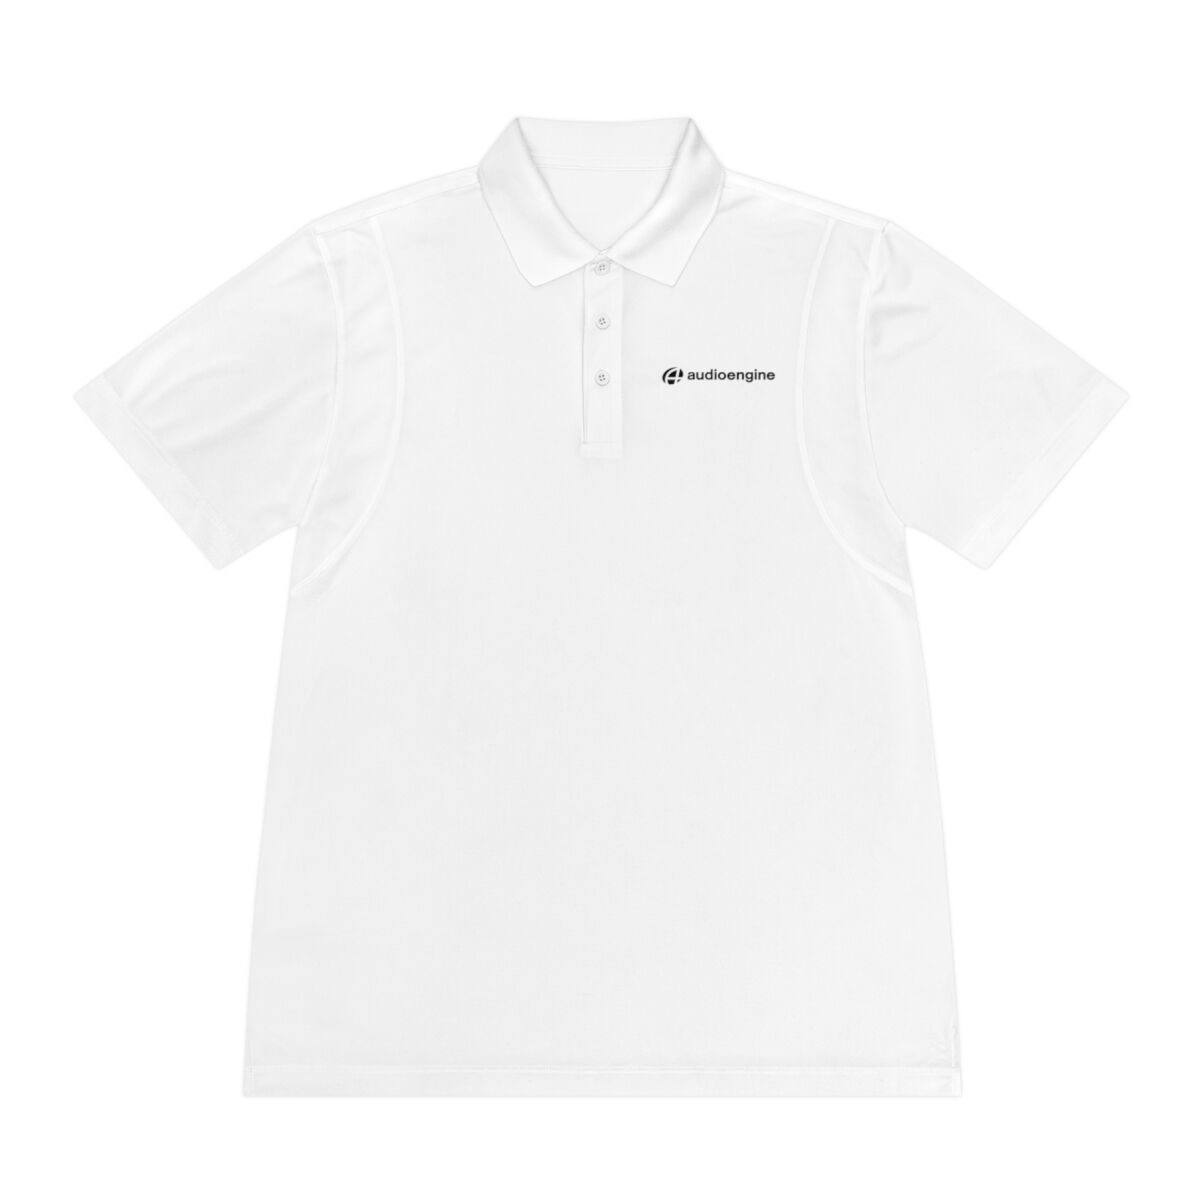 Audioengine Men's Sport Polo Shirt White 2XL